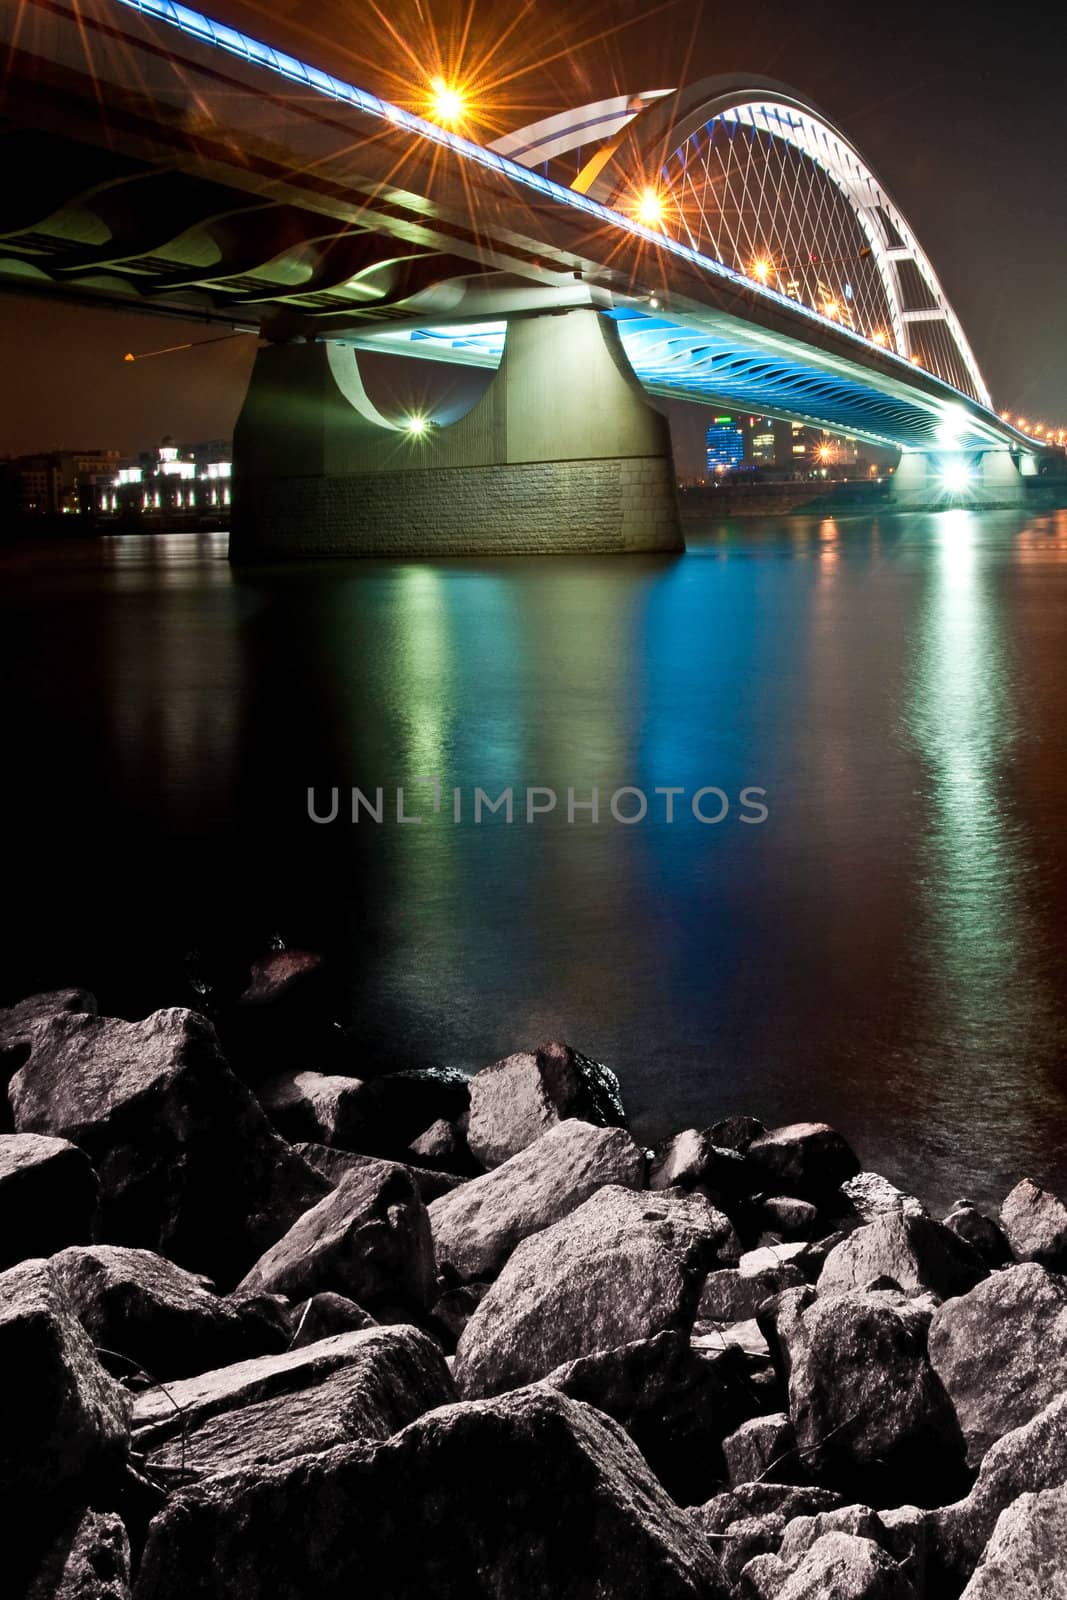 River bridge at colorful night, Apollo bridge over Danube river, Bratislava, Slovakia